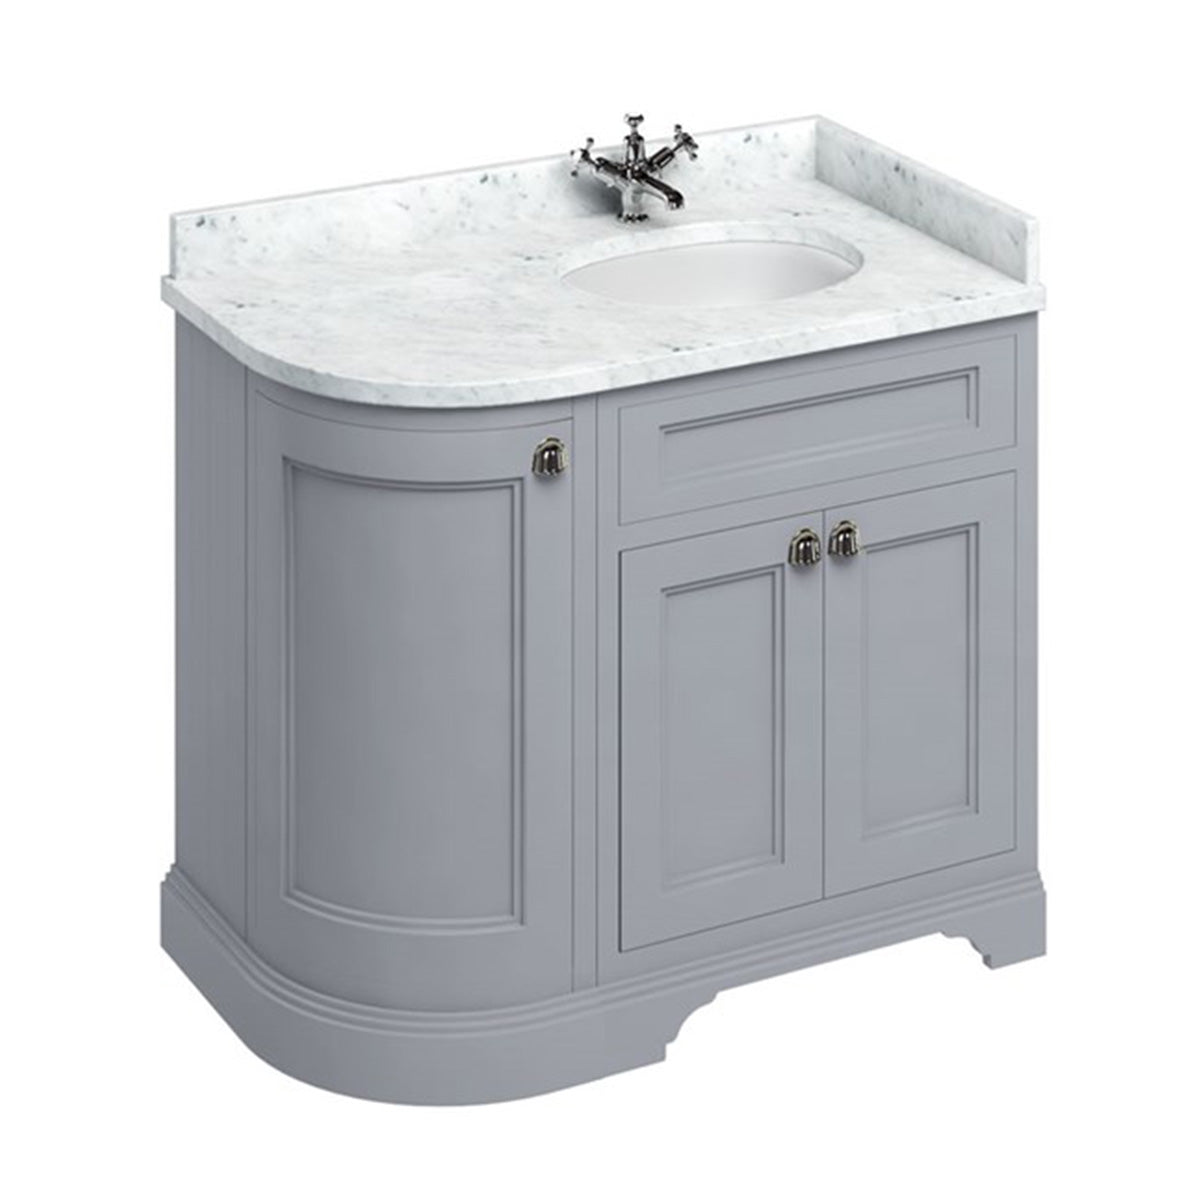 burlington 1000 LH curved freestanding 2 door vanity unit with basin and carrara marble worktop classic grey